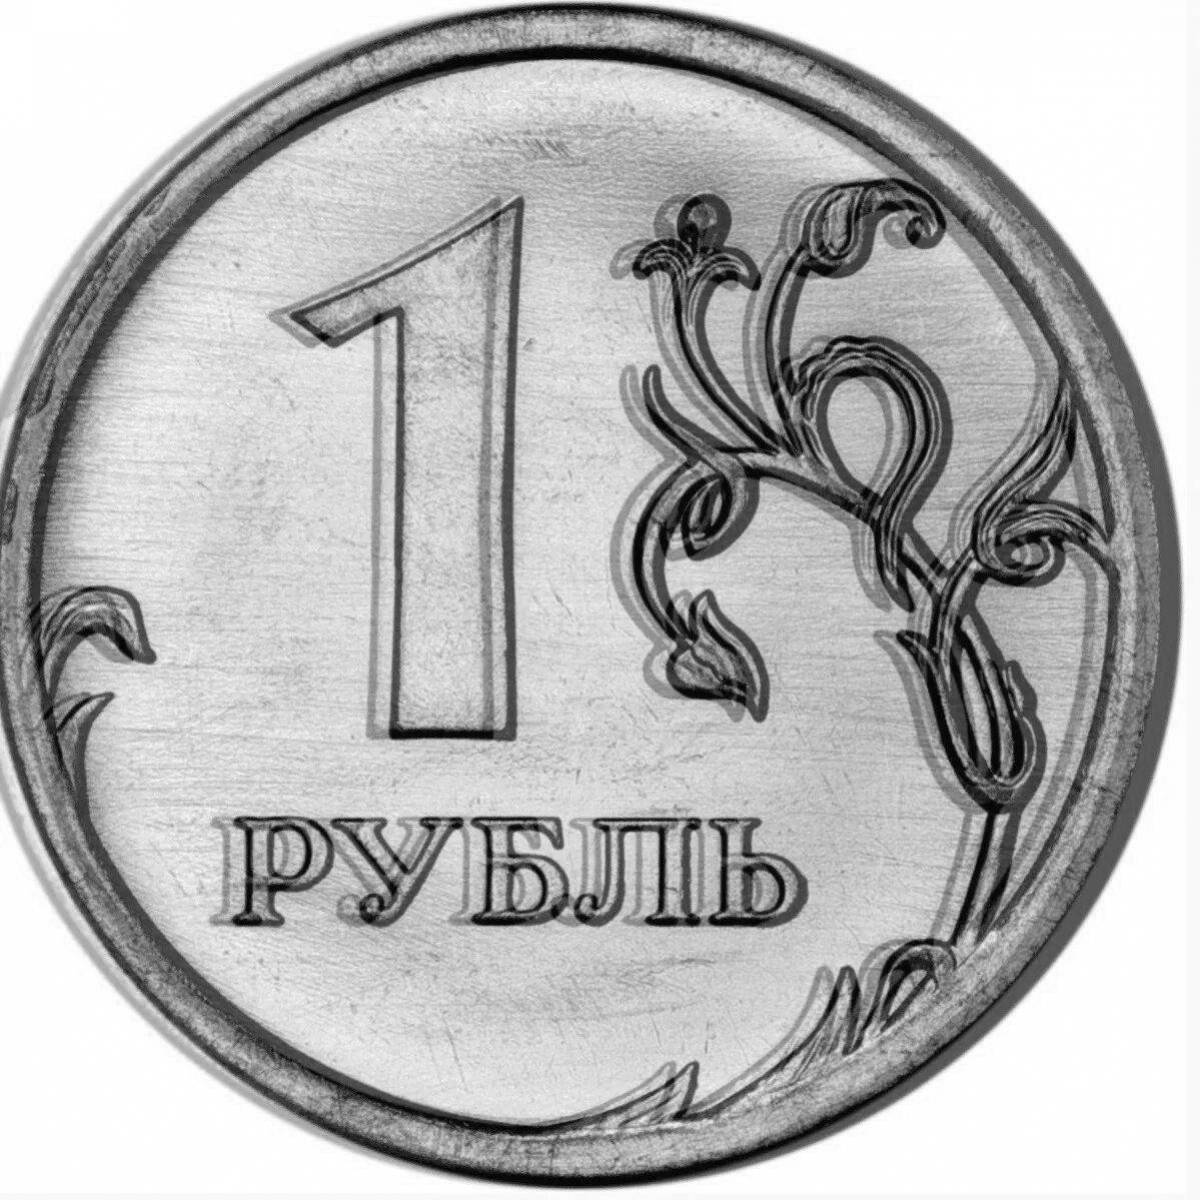 Просто рубль. Монета 1 рубль. Изображение монеты 1 рубль. Монета 1 рубль на прозрачном фоне. Монета 1 рубль 2020 года.